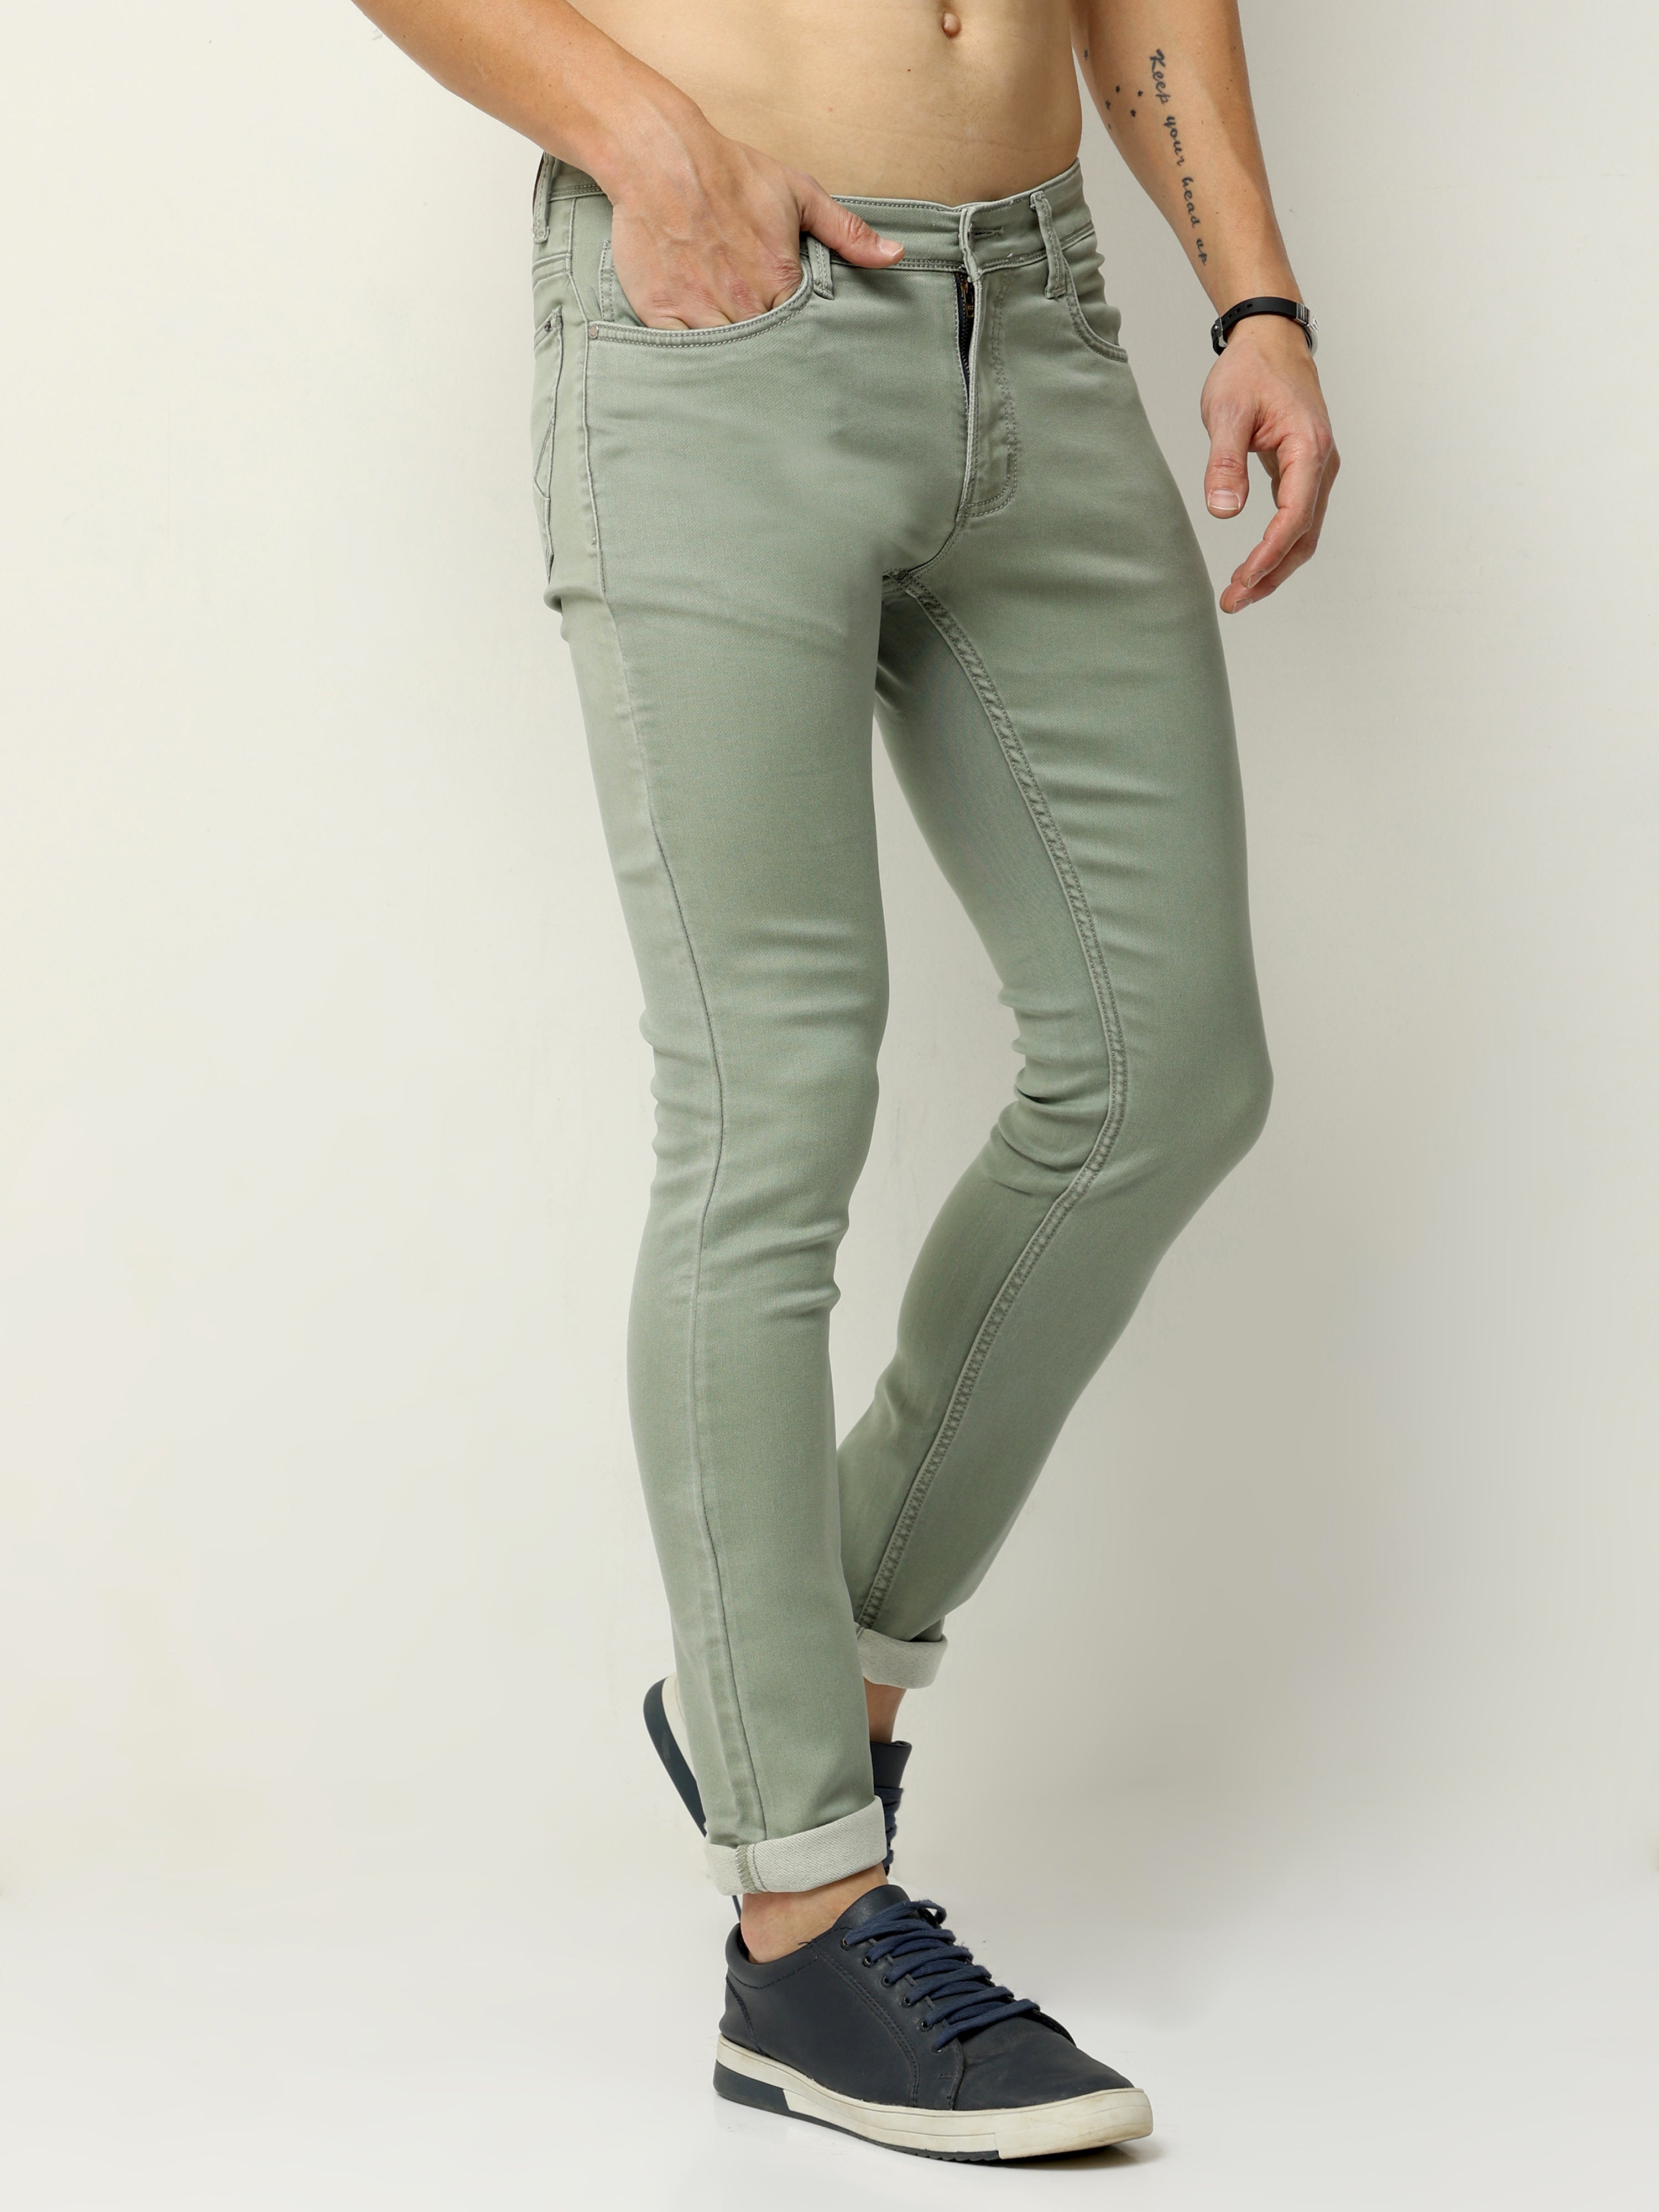 Olive Oasis Men's Slim Fit Jeans